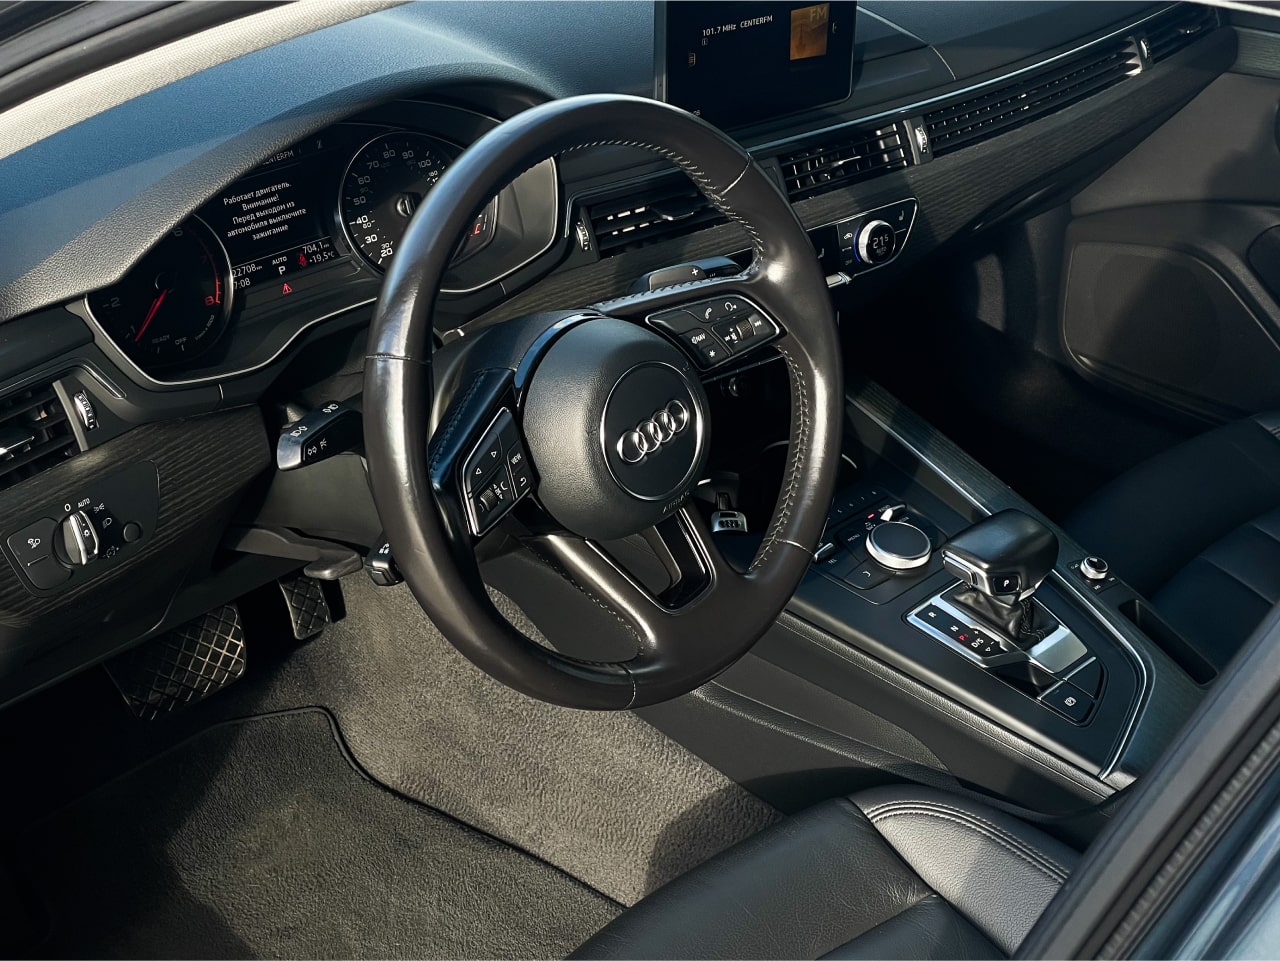 Аренда  Audi A4 B9 2.0 TSFI  2 класса 2020 года в городе Минск от 76 $/сутки,  двигатель: Бензин , объем 2.0 TSFI литров, КАСКО (Мультидрайв), без водителя, вид 3 - West Group